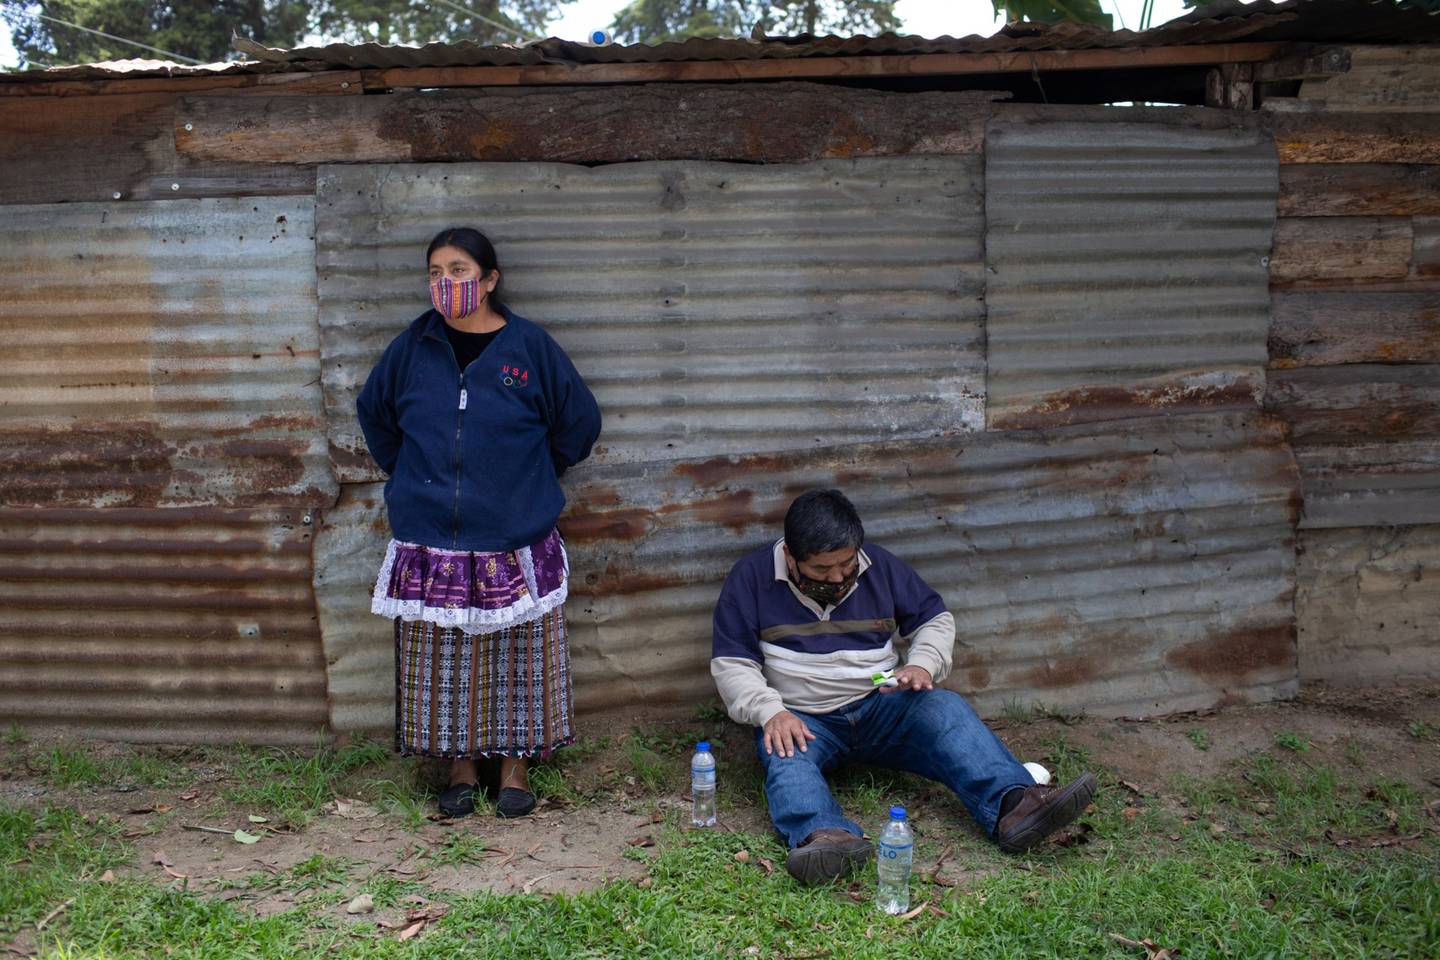 El 70% de los guatemaltecos sufrieron al menos una privación en alguna dimensión del desarrollo humano, según documento de la PNUD.